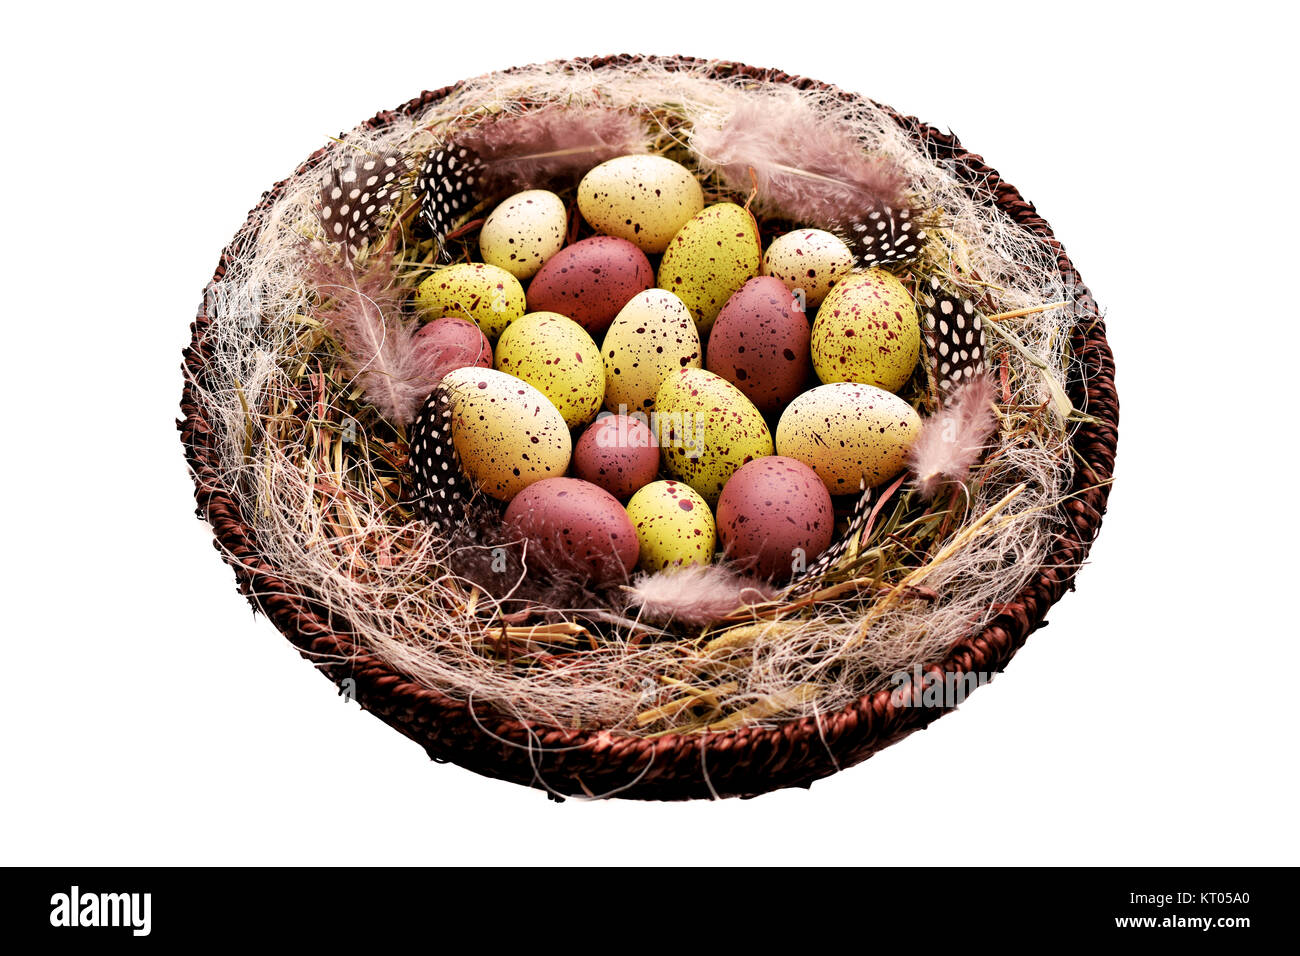 Dekorative Ostereier im Korb mit Heu und Perlhühner Federn Stockfoto